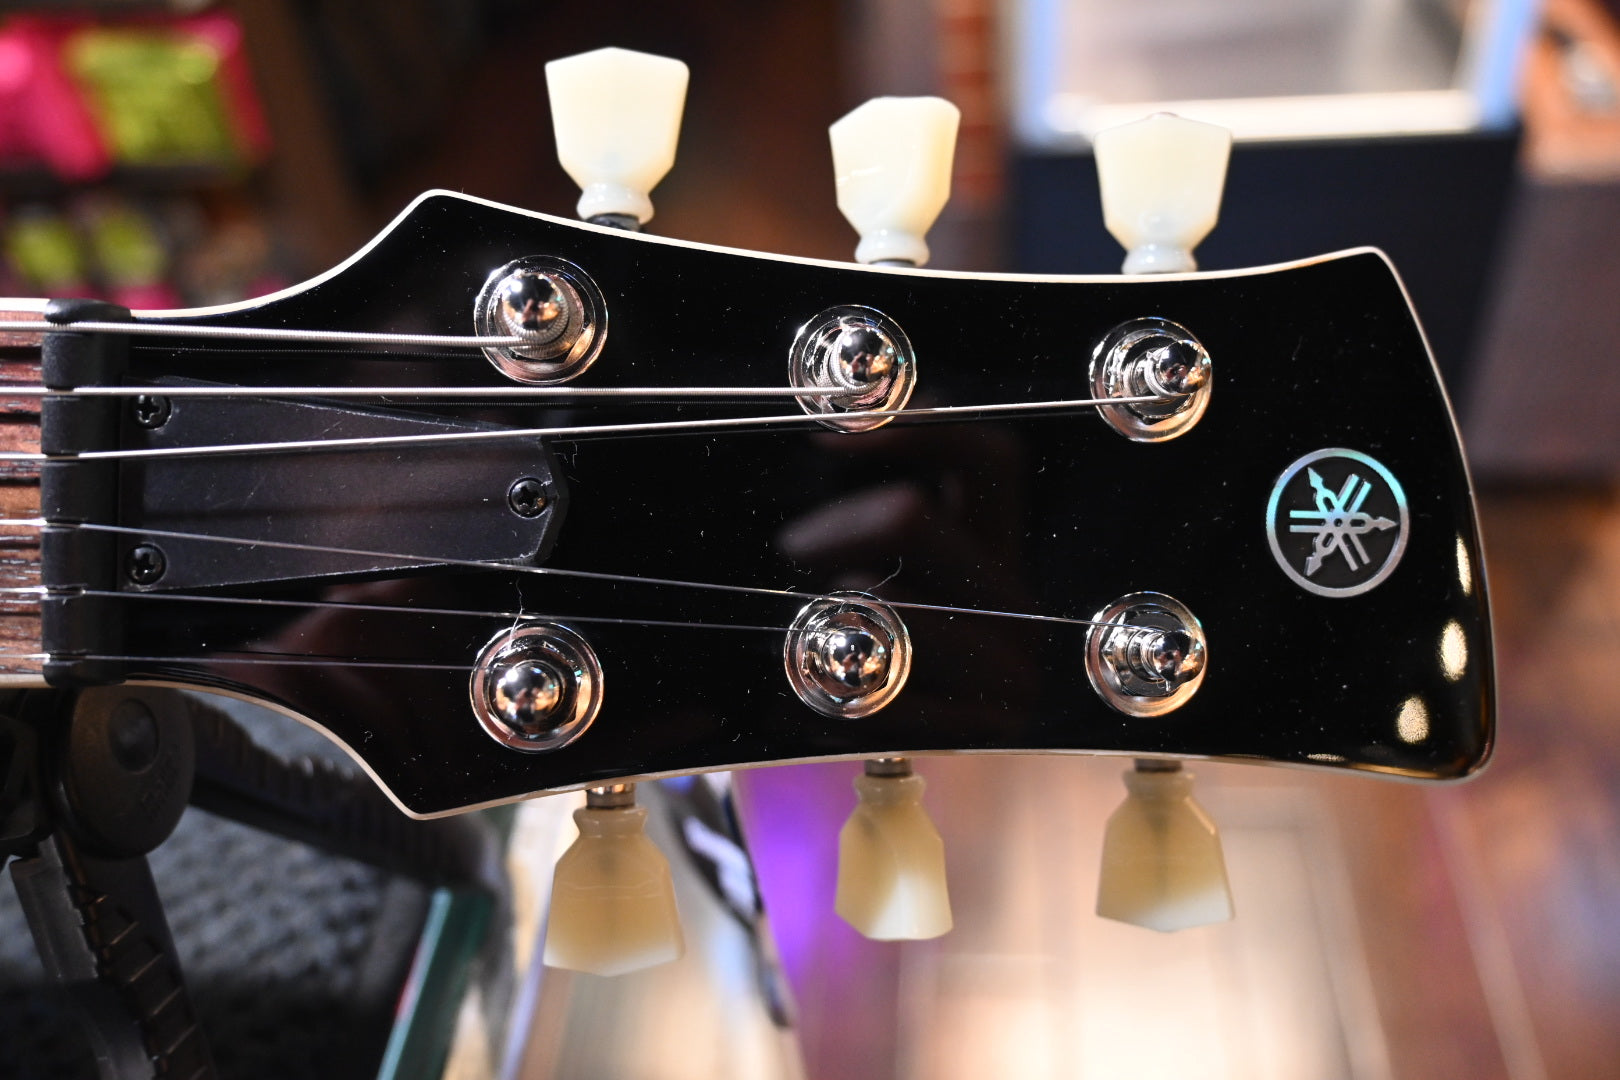 Yamaha Revstar Standard RSS20 - Swift Blue Guitar #3484